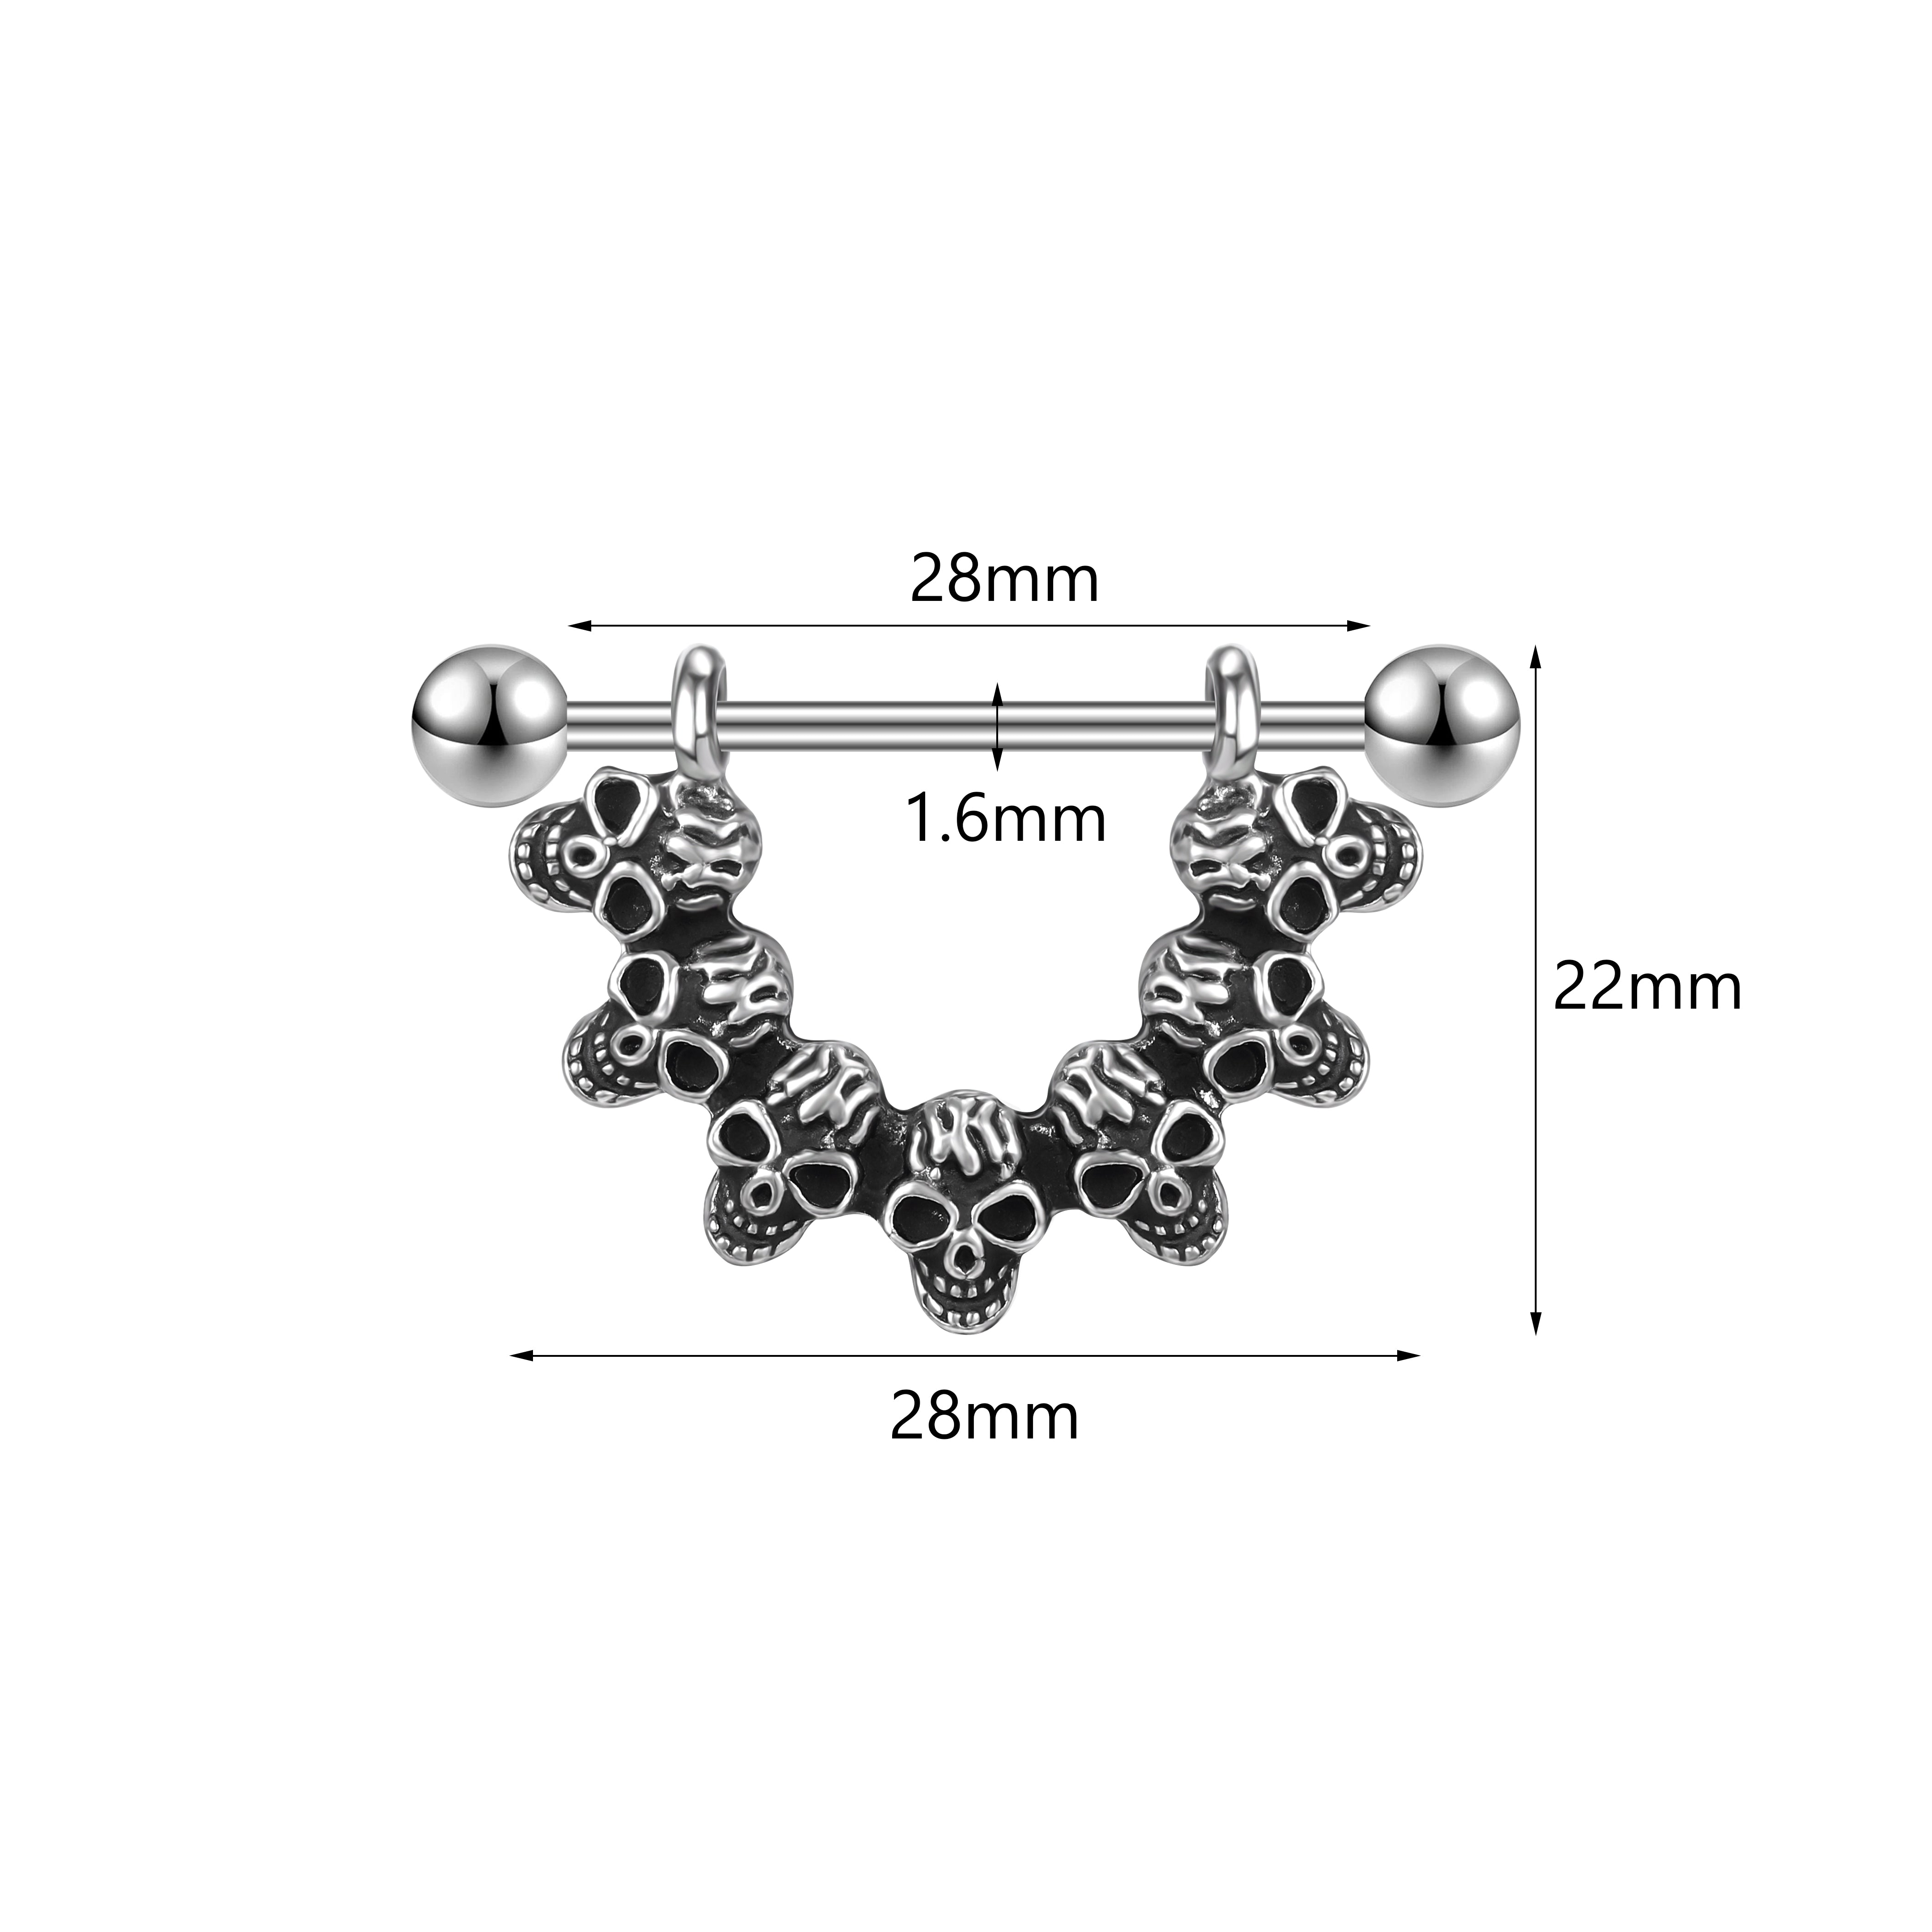 2Pcs 14G Skull Nipple Rings Stainless Steel Nipple Piercing Barbell Jewelry